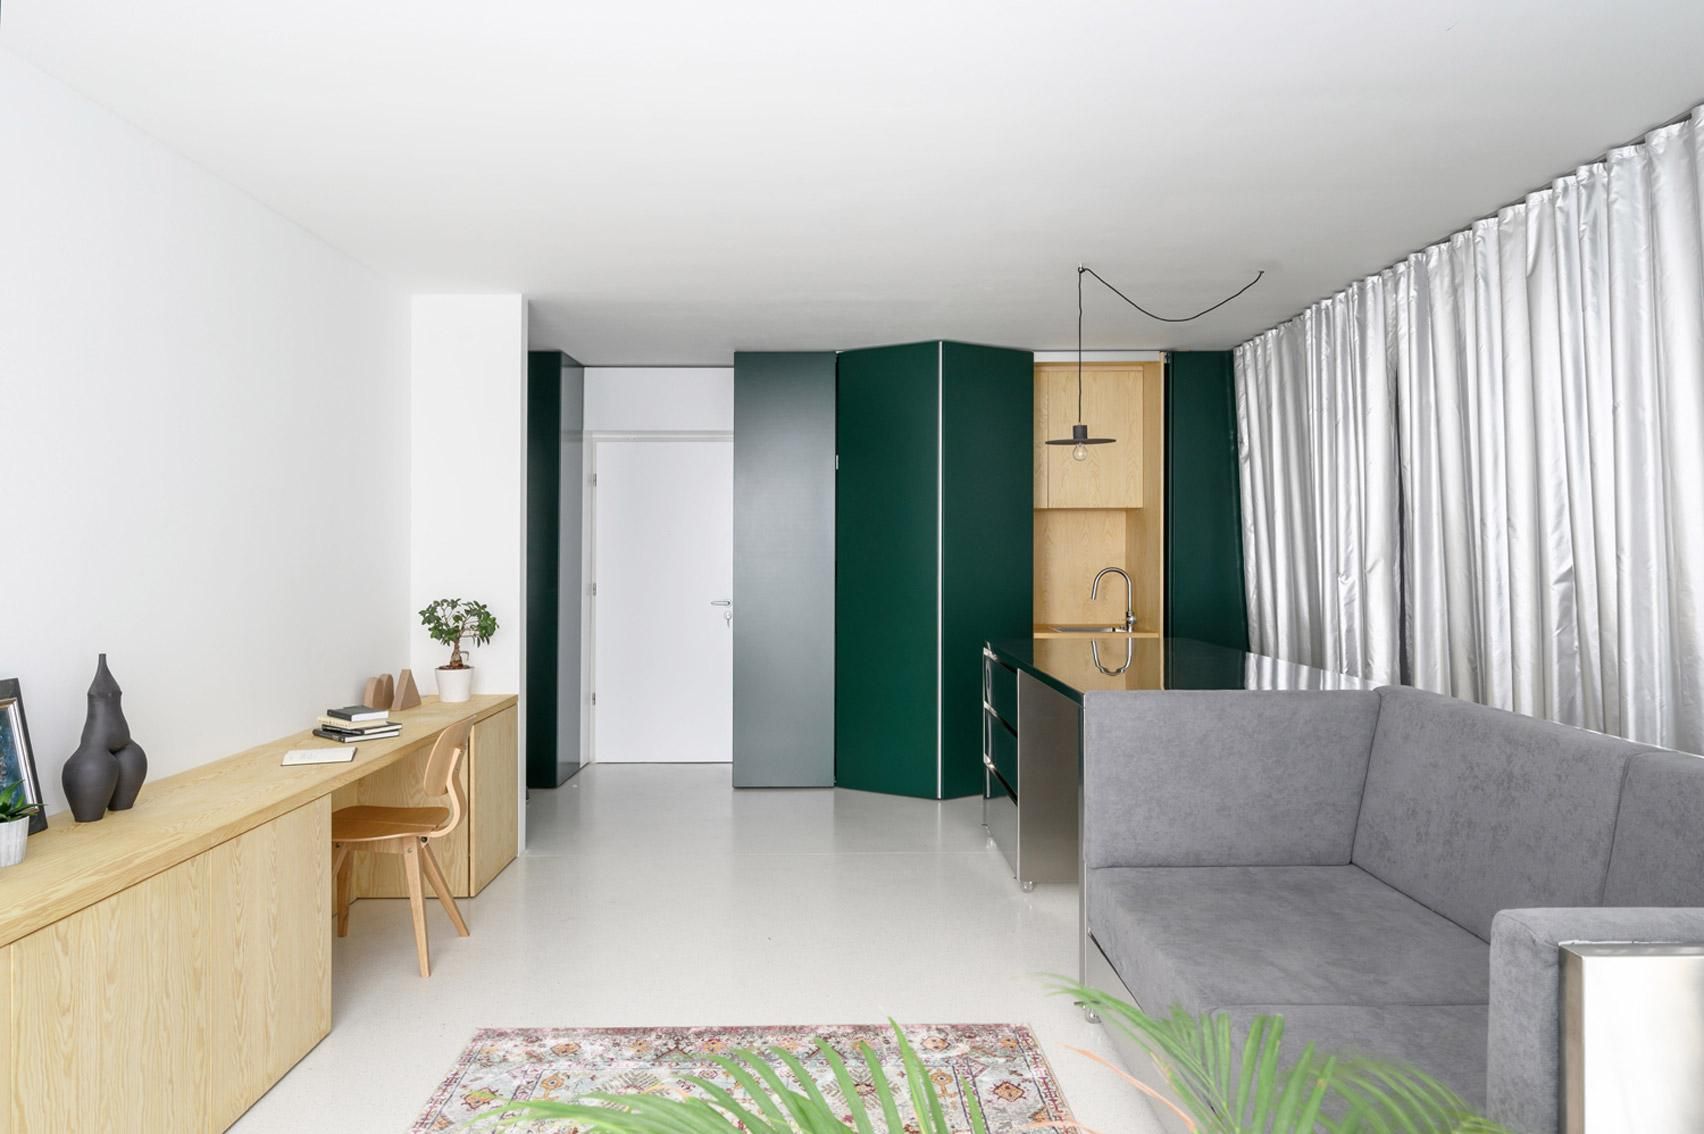 Многофункциональная мебель и собака: фото стильной двухкомнатной квартиры из Словении